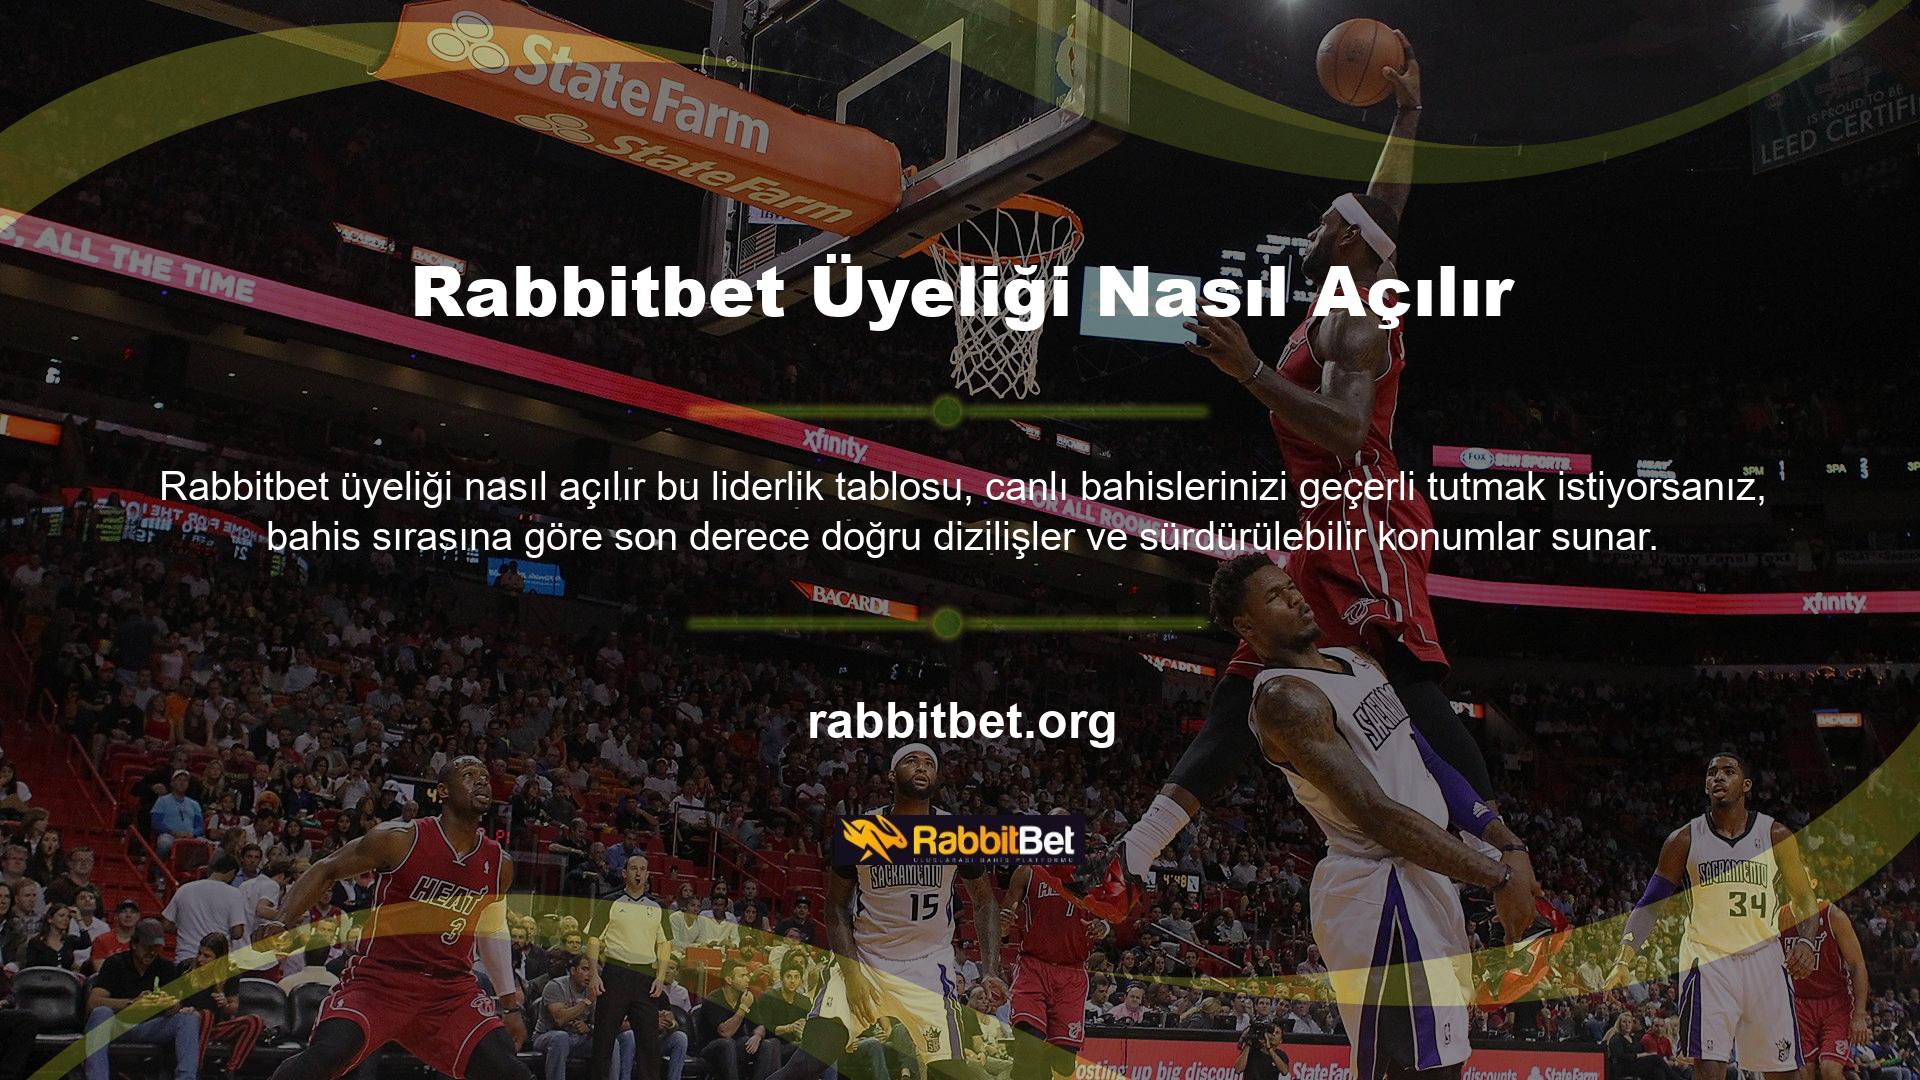 Rabbitbet üyelik seviyeleri kolay bir sırayla sunulmaktadır